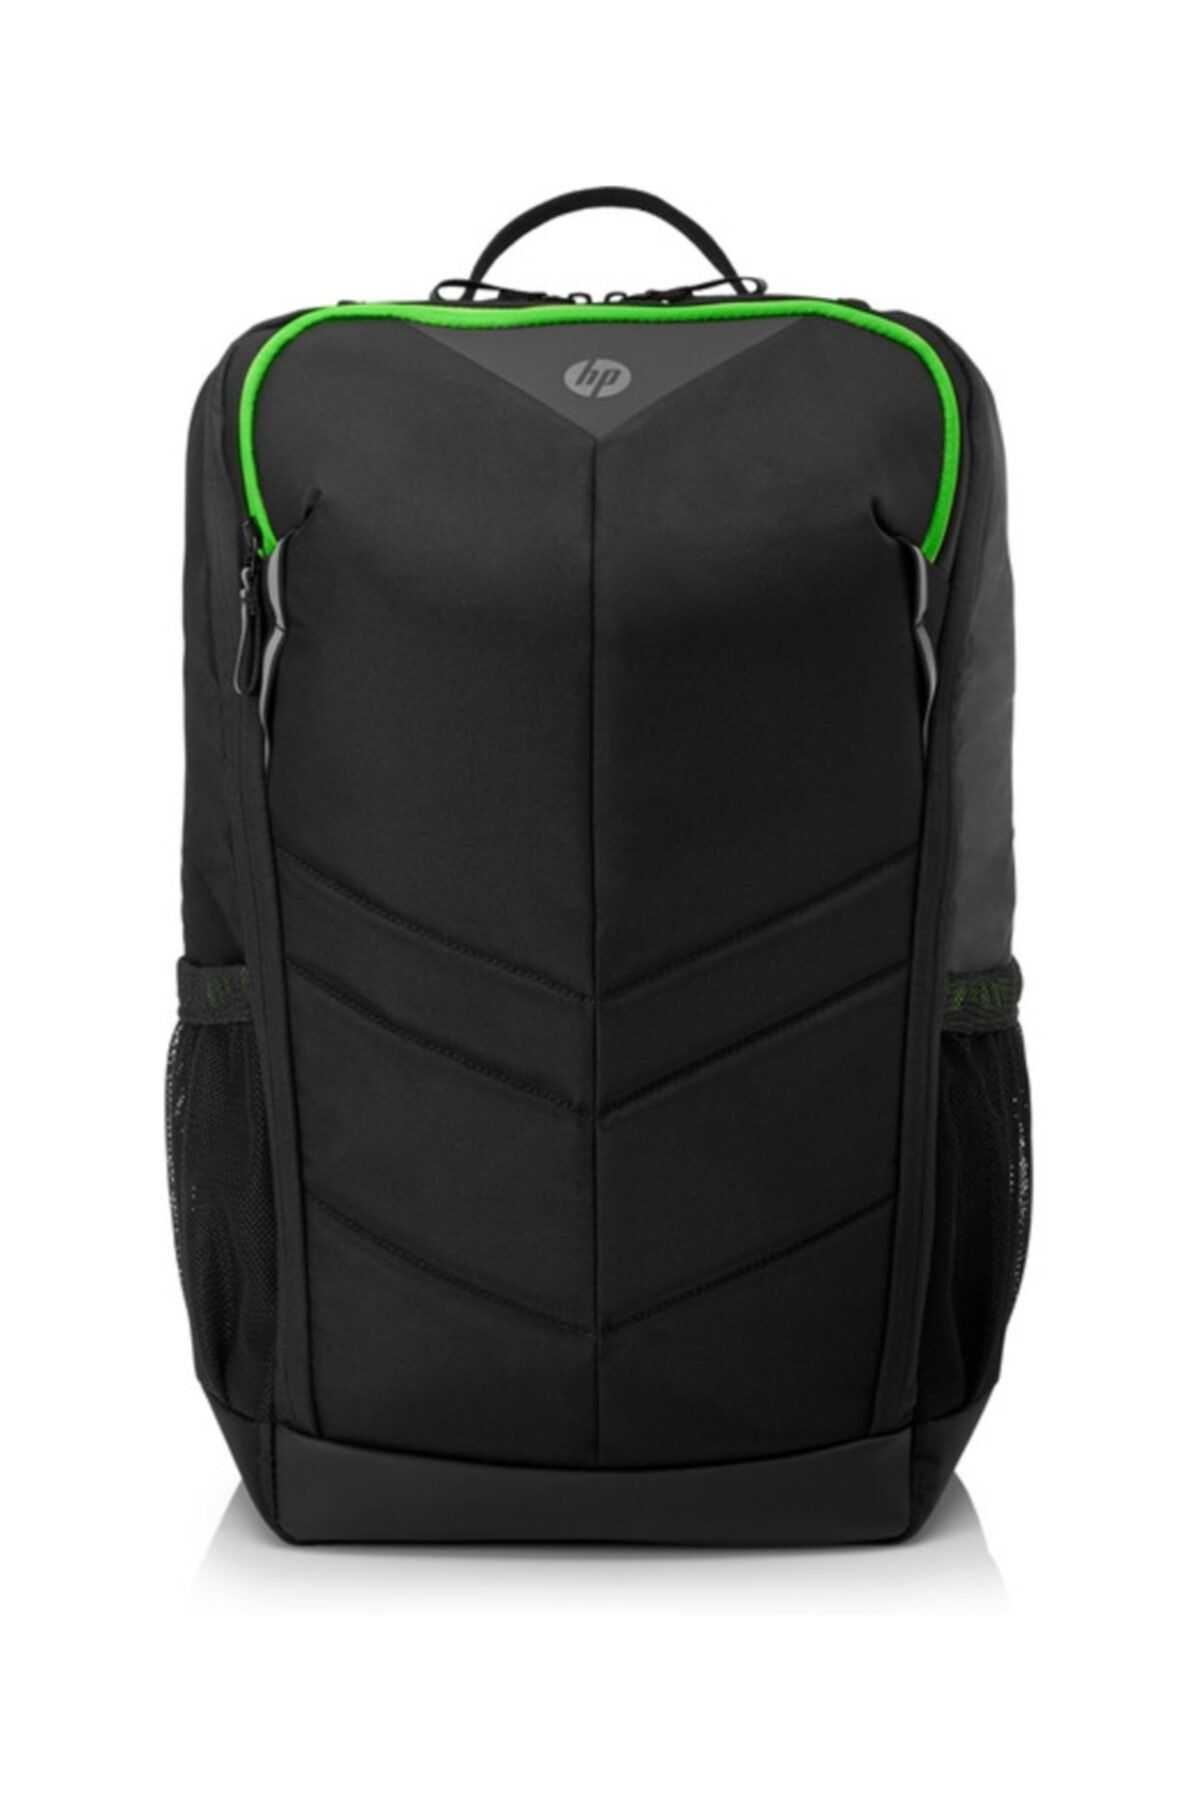 HP Pavilion Gaming Backpack 400 6eu57aa 15.6" Notebook Sırt Çantası